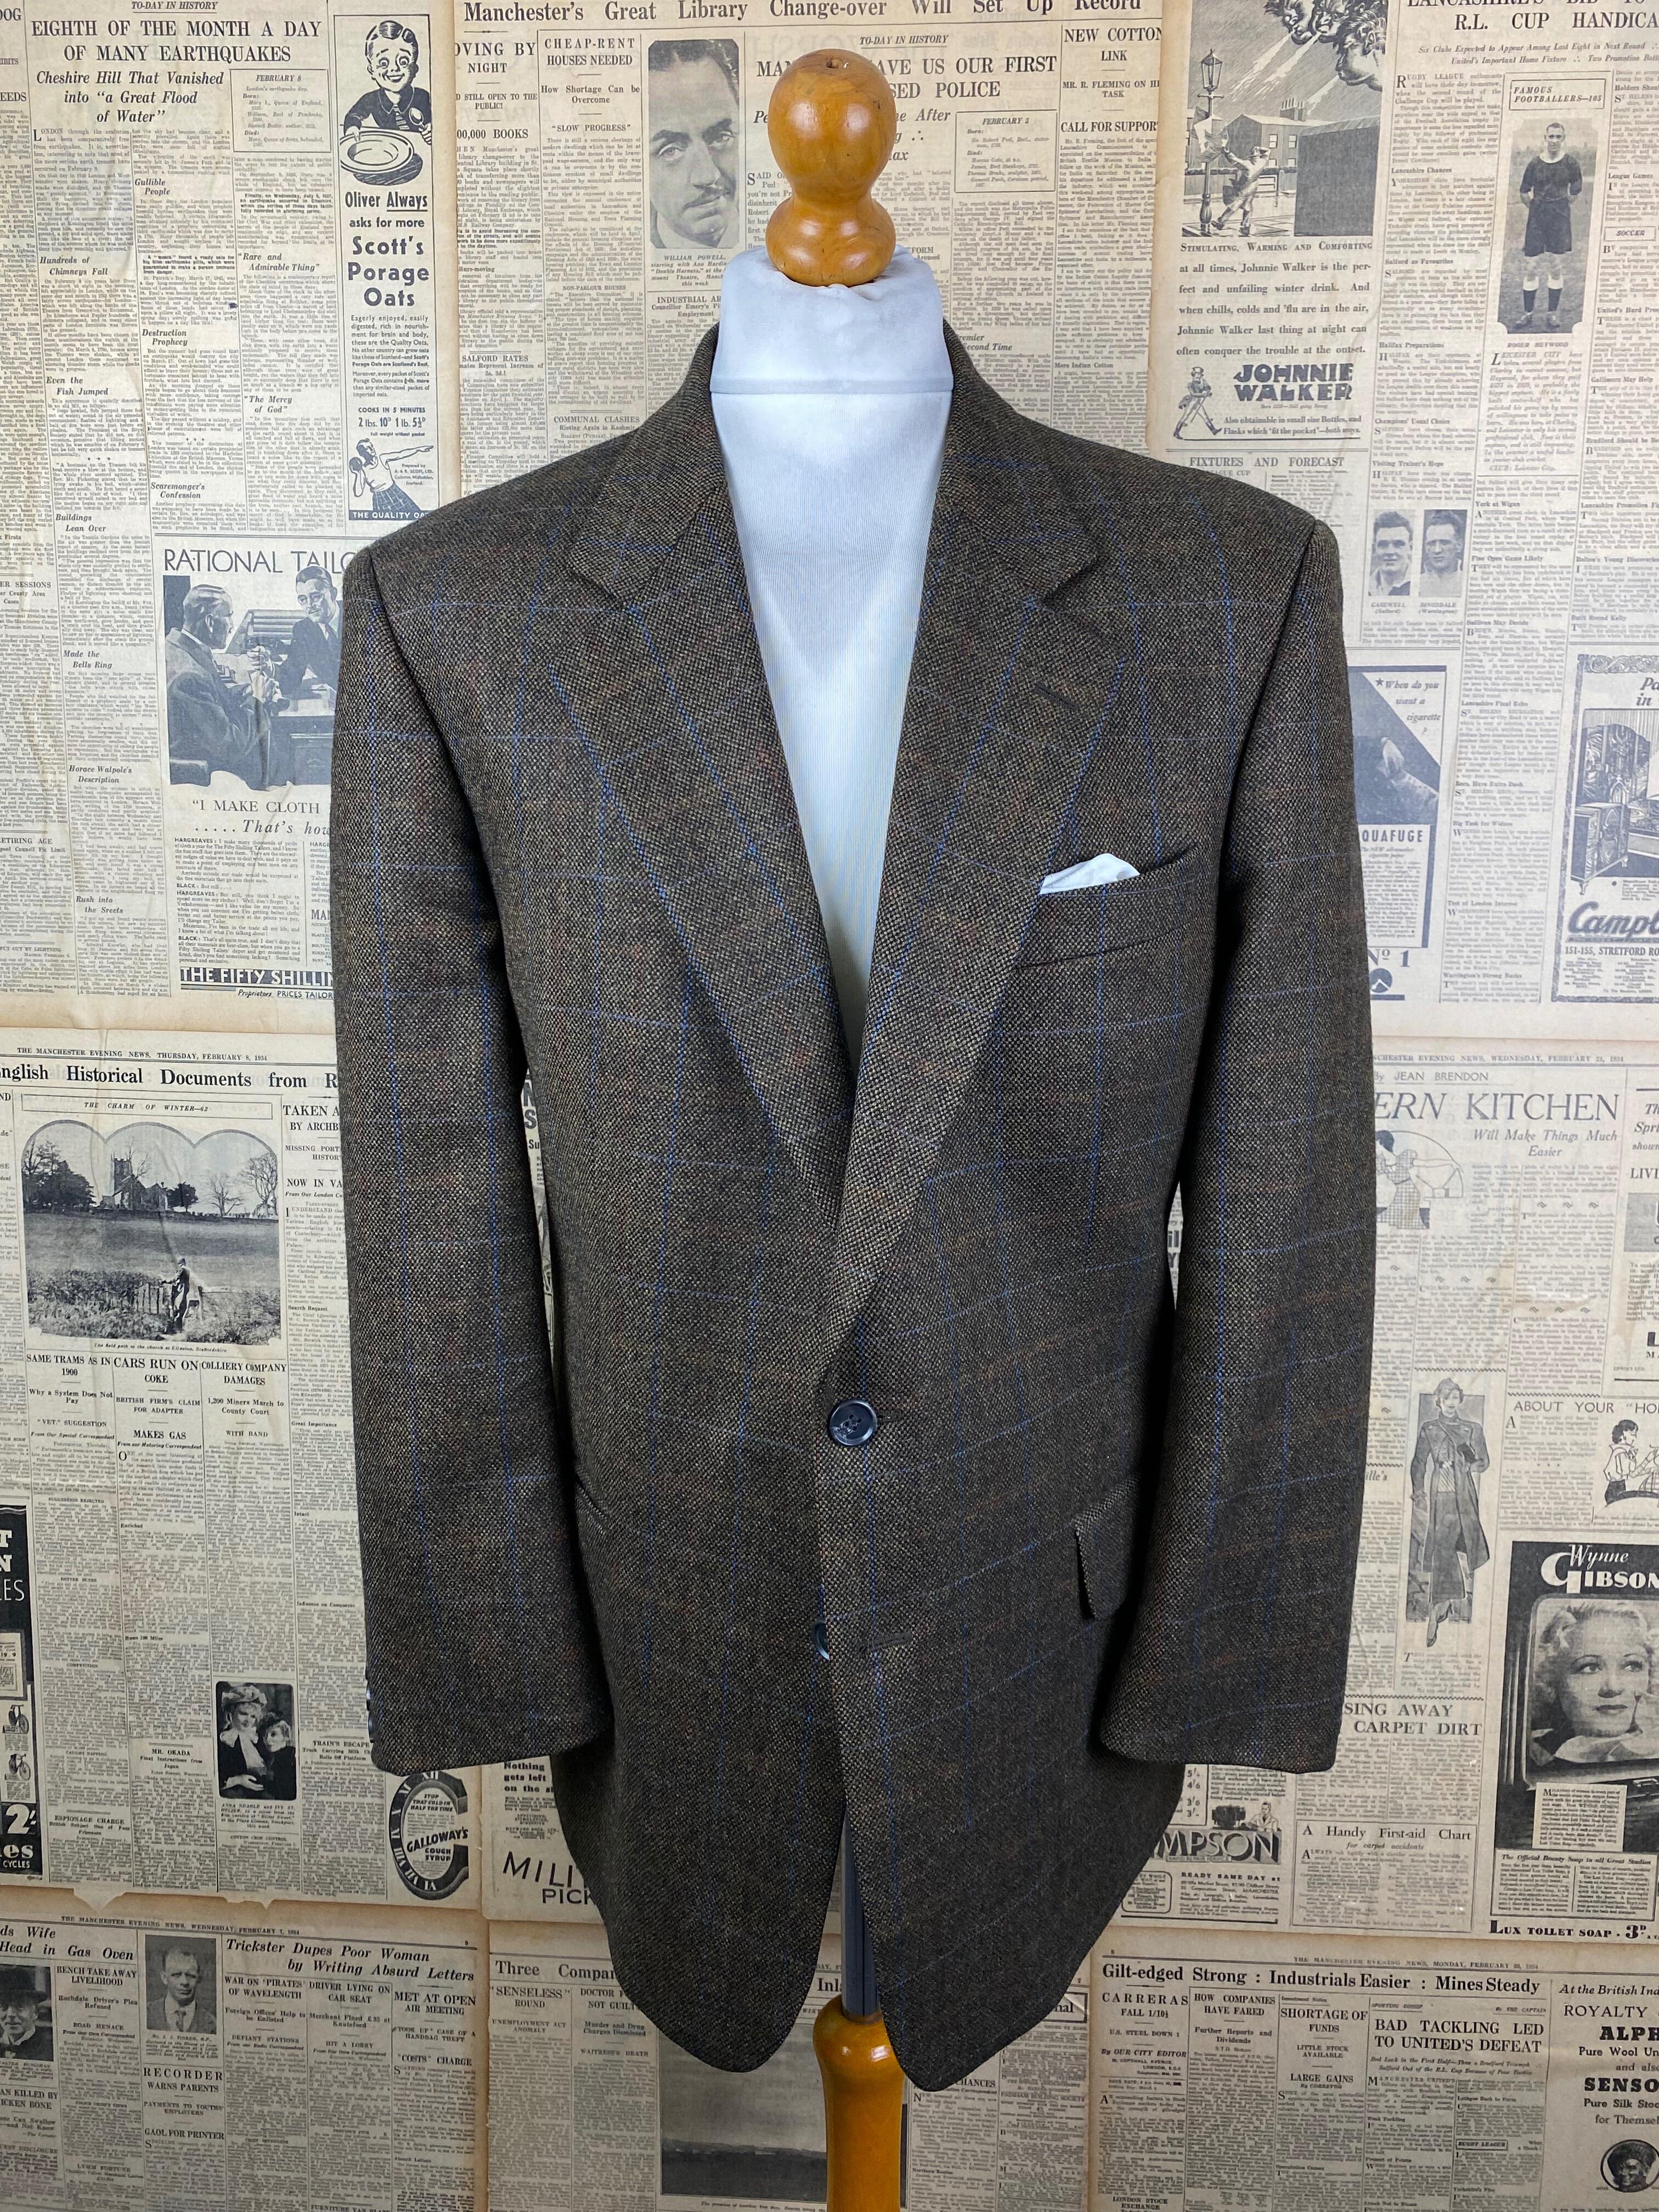 1940s Donegal tweed Jacket